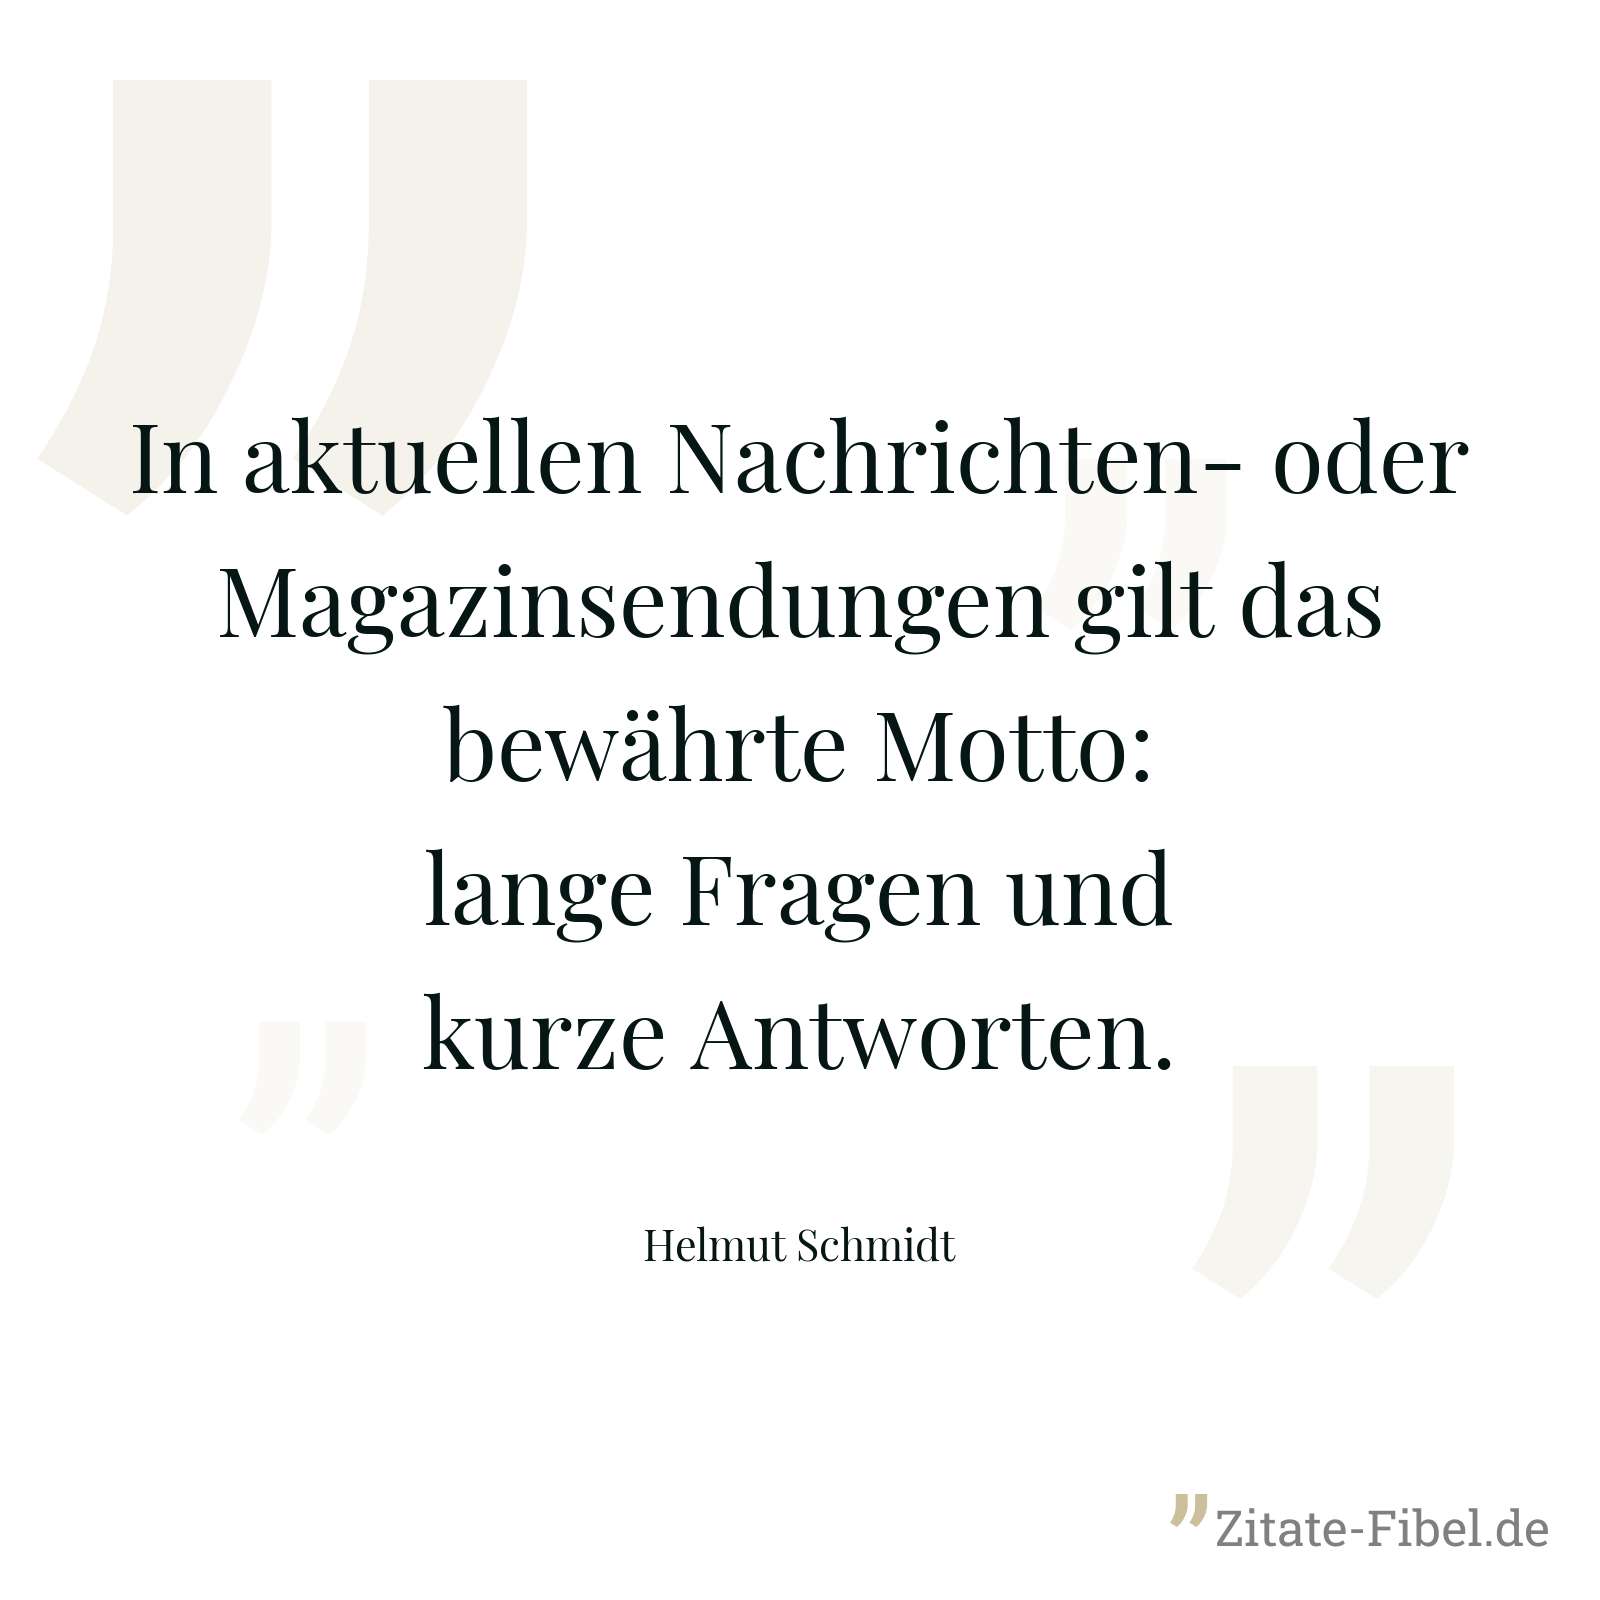 In aktuellen Nachrichten- oder Magazinsendungen gilt das bewährte Motto: lange Fragen und kurze Antworten. - Helmut Schmidt